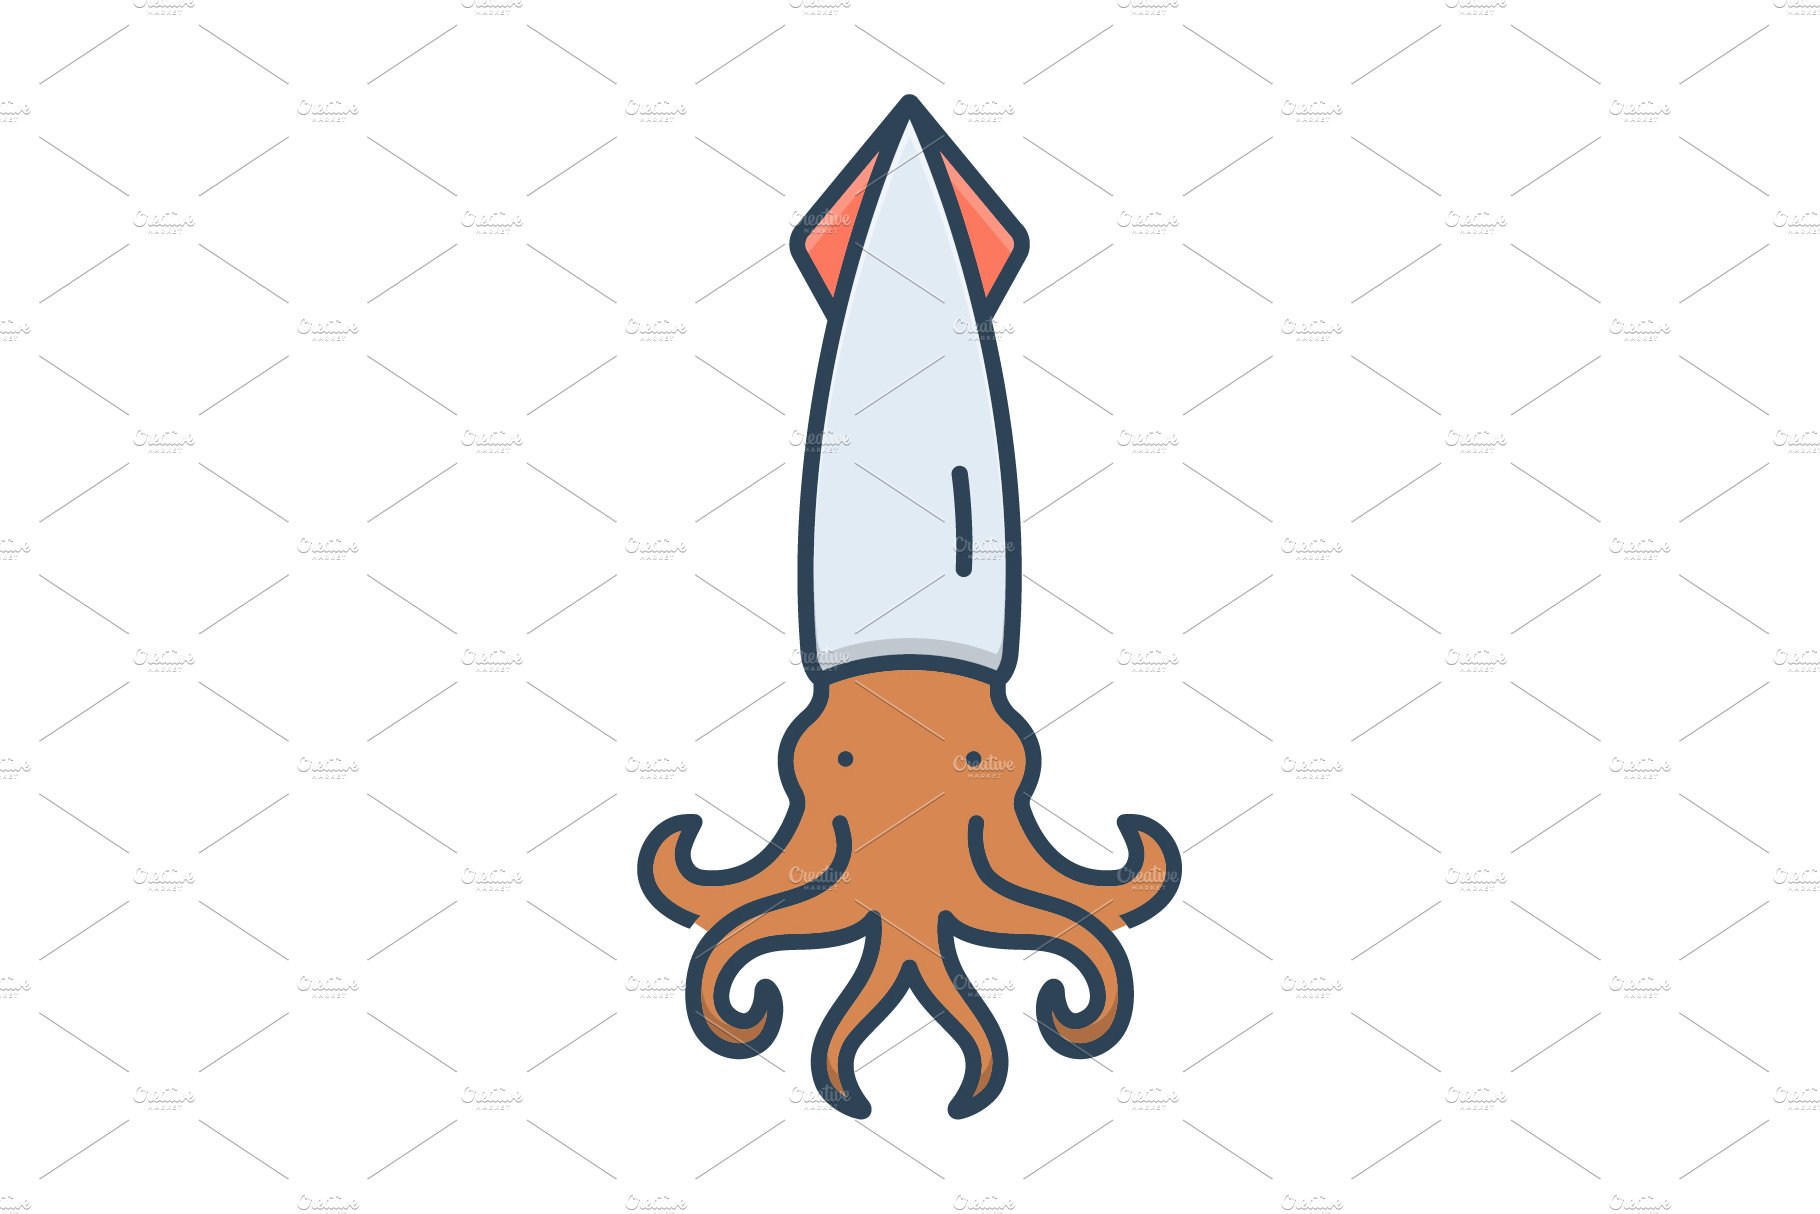 Squid calamari icon cover image.